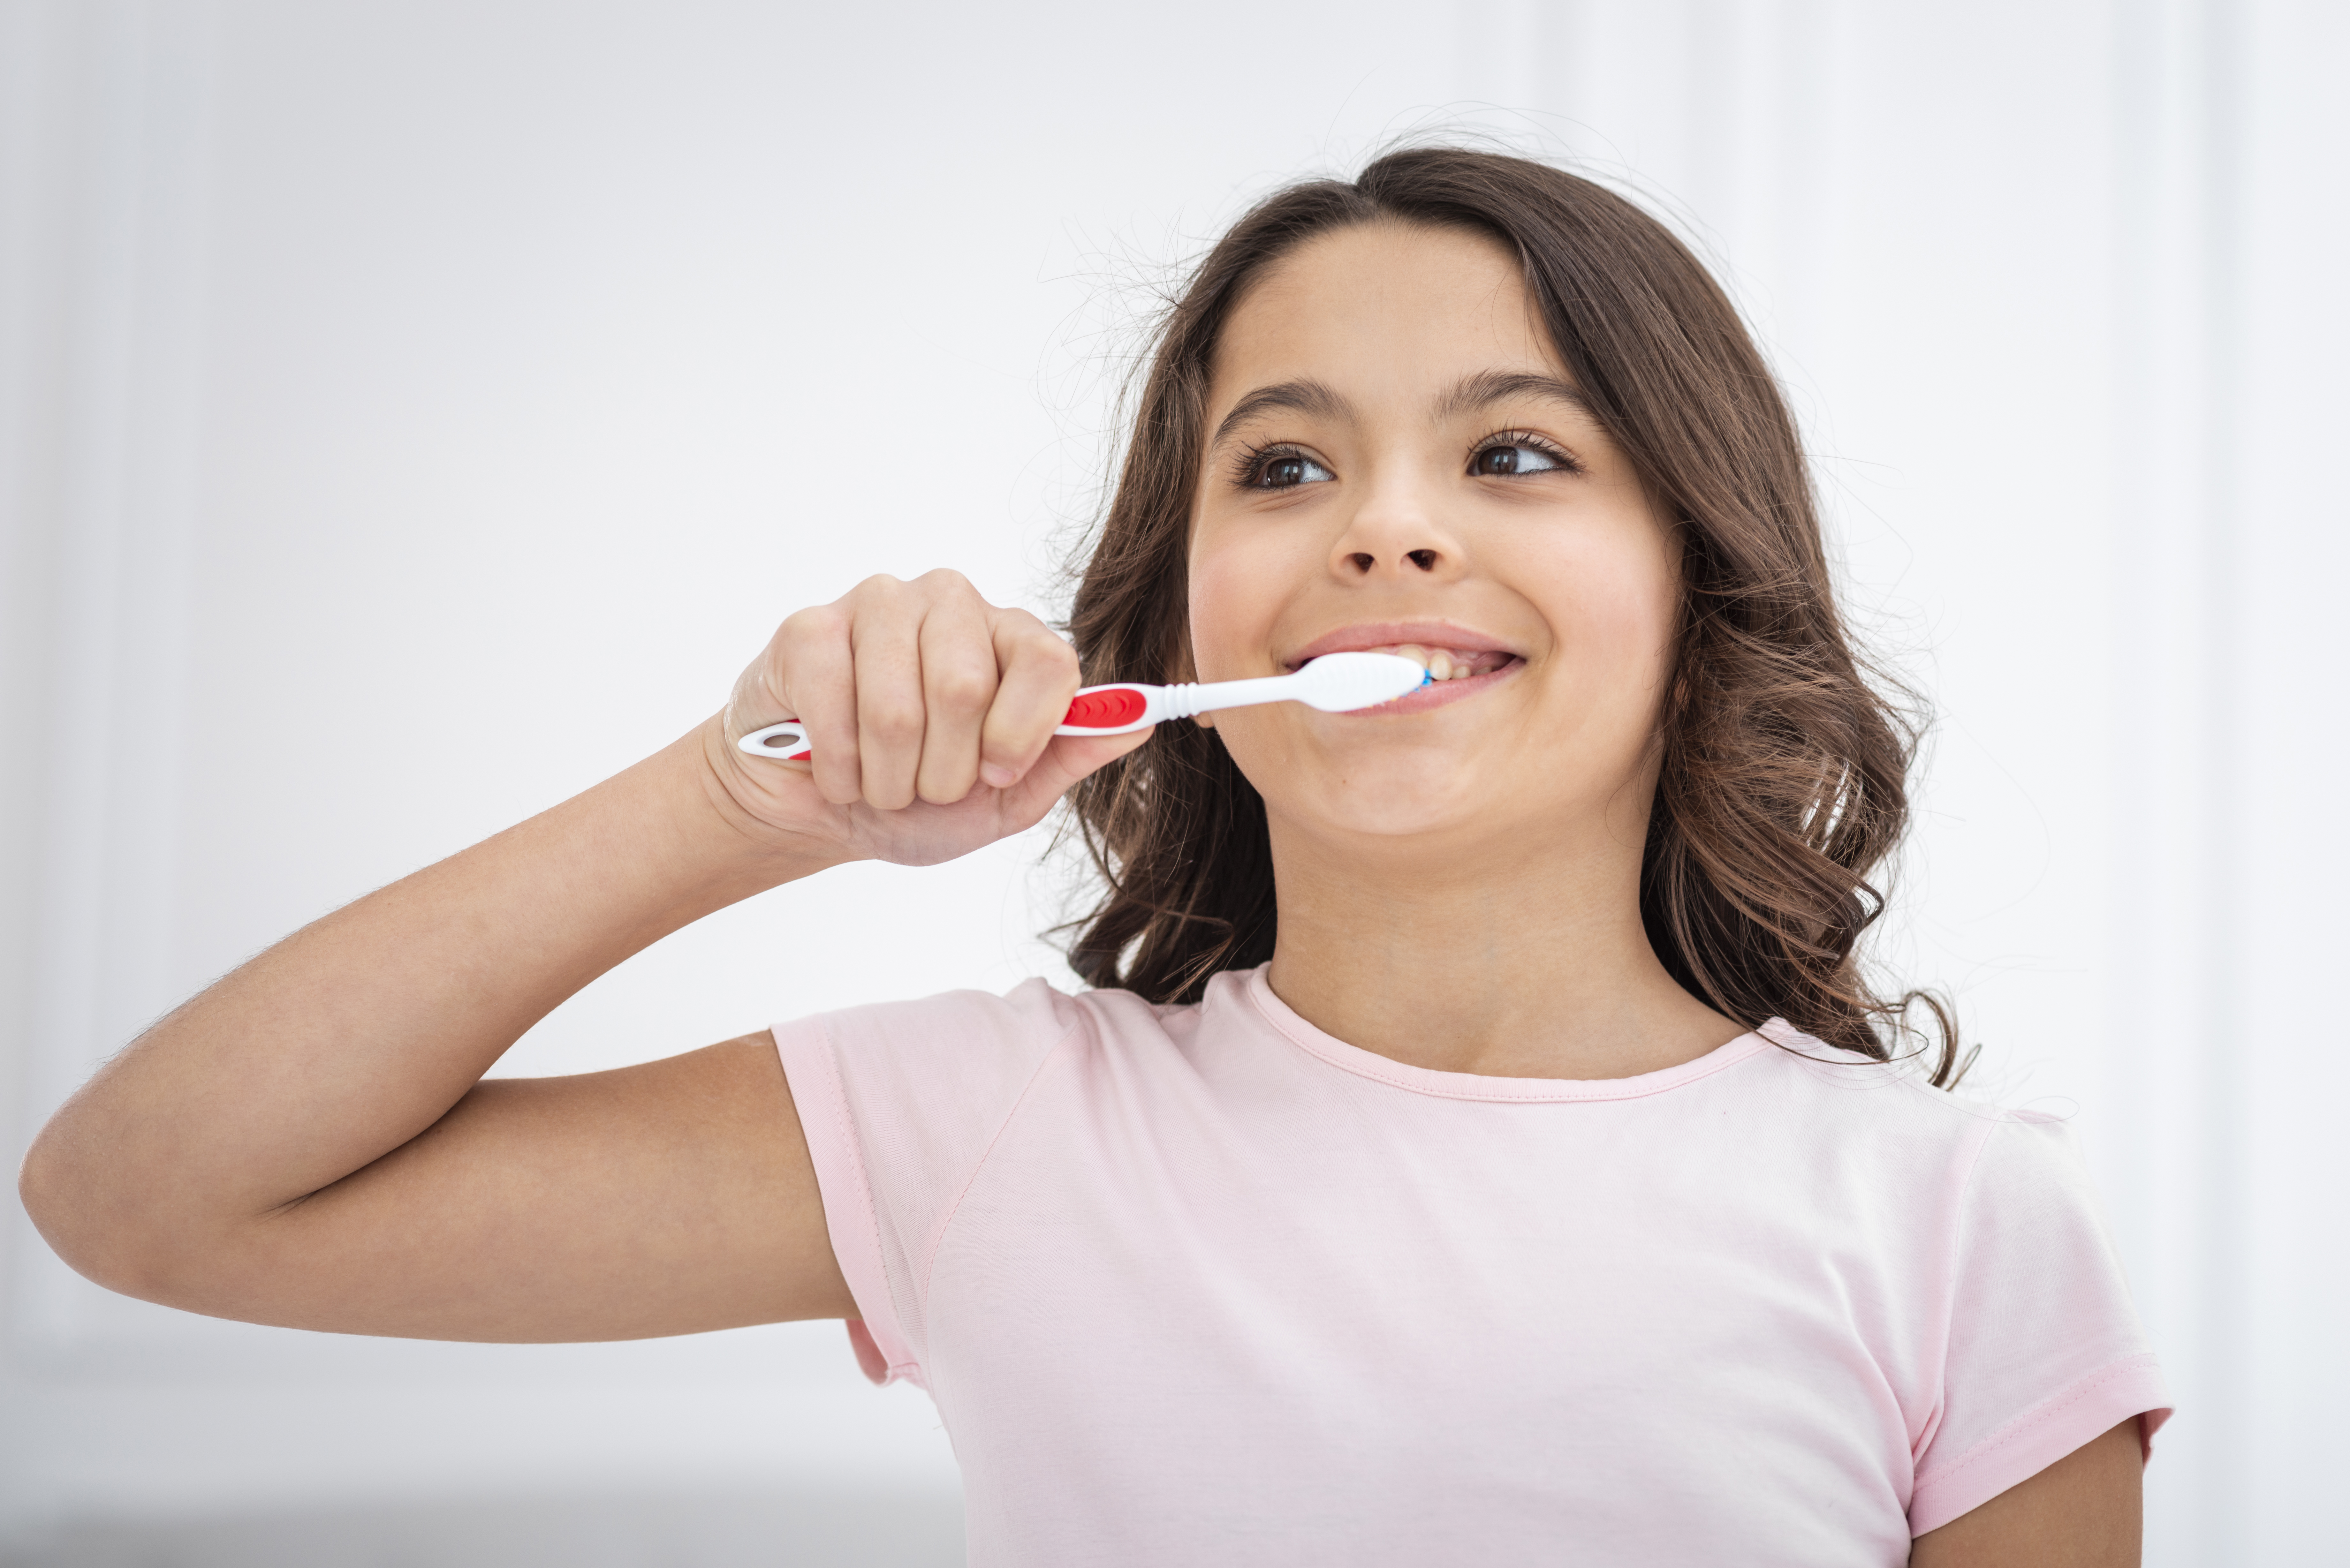 Oral Hygiene for Kids: Tips for Parents